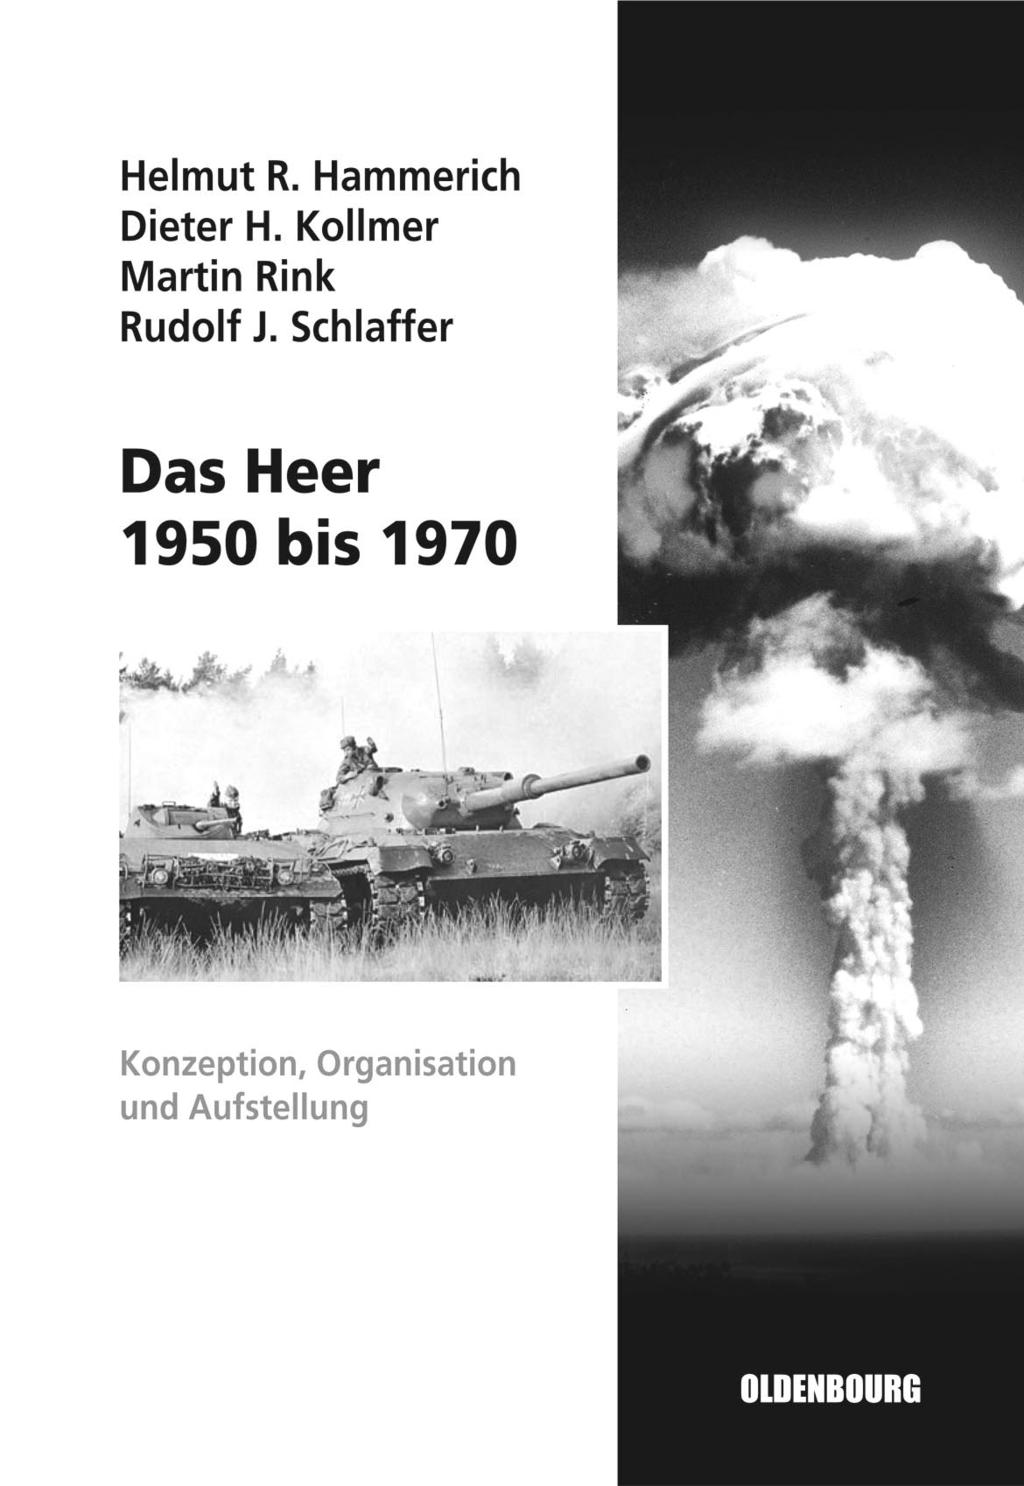 Neuerscheinungen Militärgeschichtliches Forschungsamt Helmut R. Hammerich, Dieter H. Kollmer, Martin Rink und Rudolf Schlaffer Das Heer 1950 bis 1970. Konzeption, Organisation und Aufstellung.